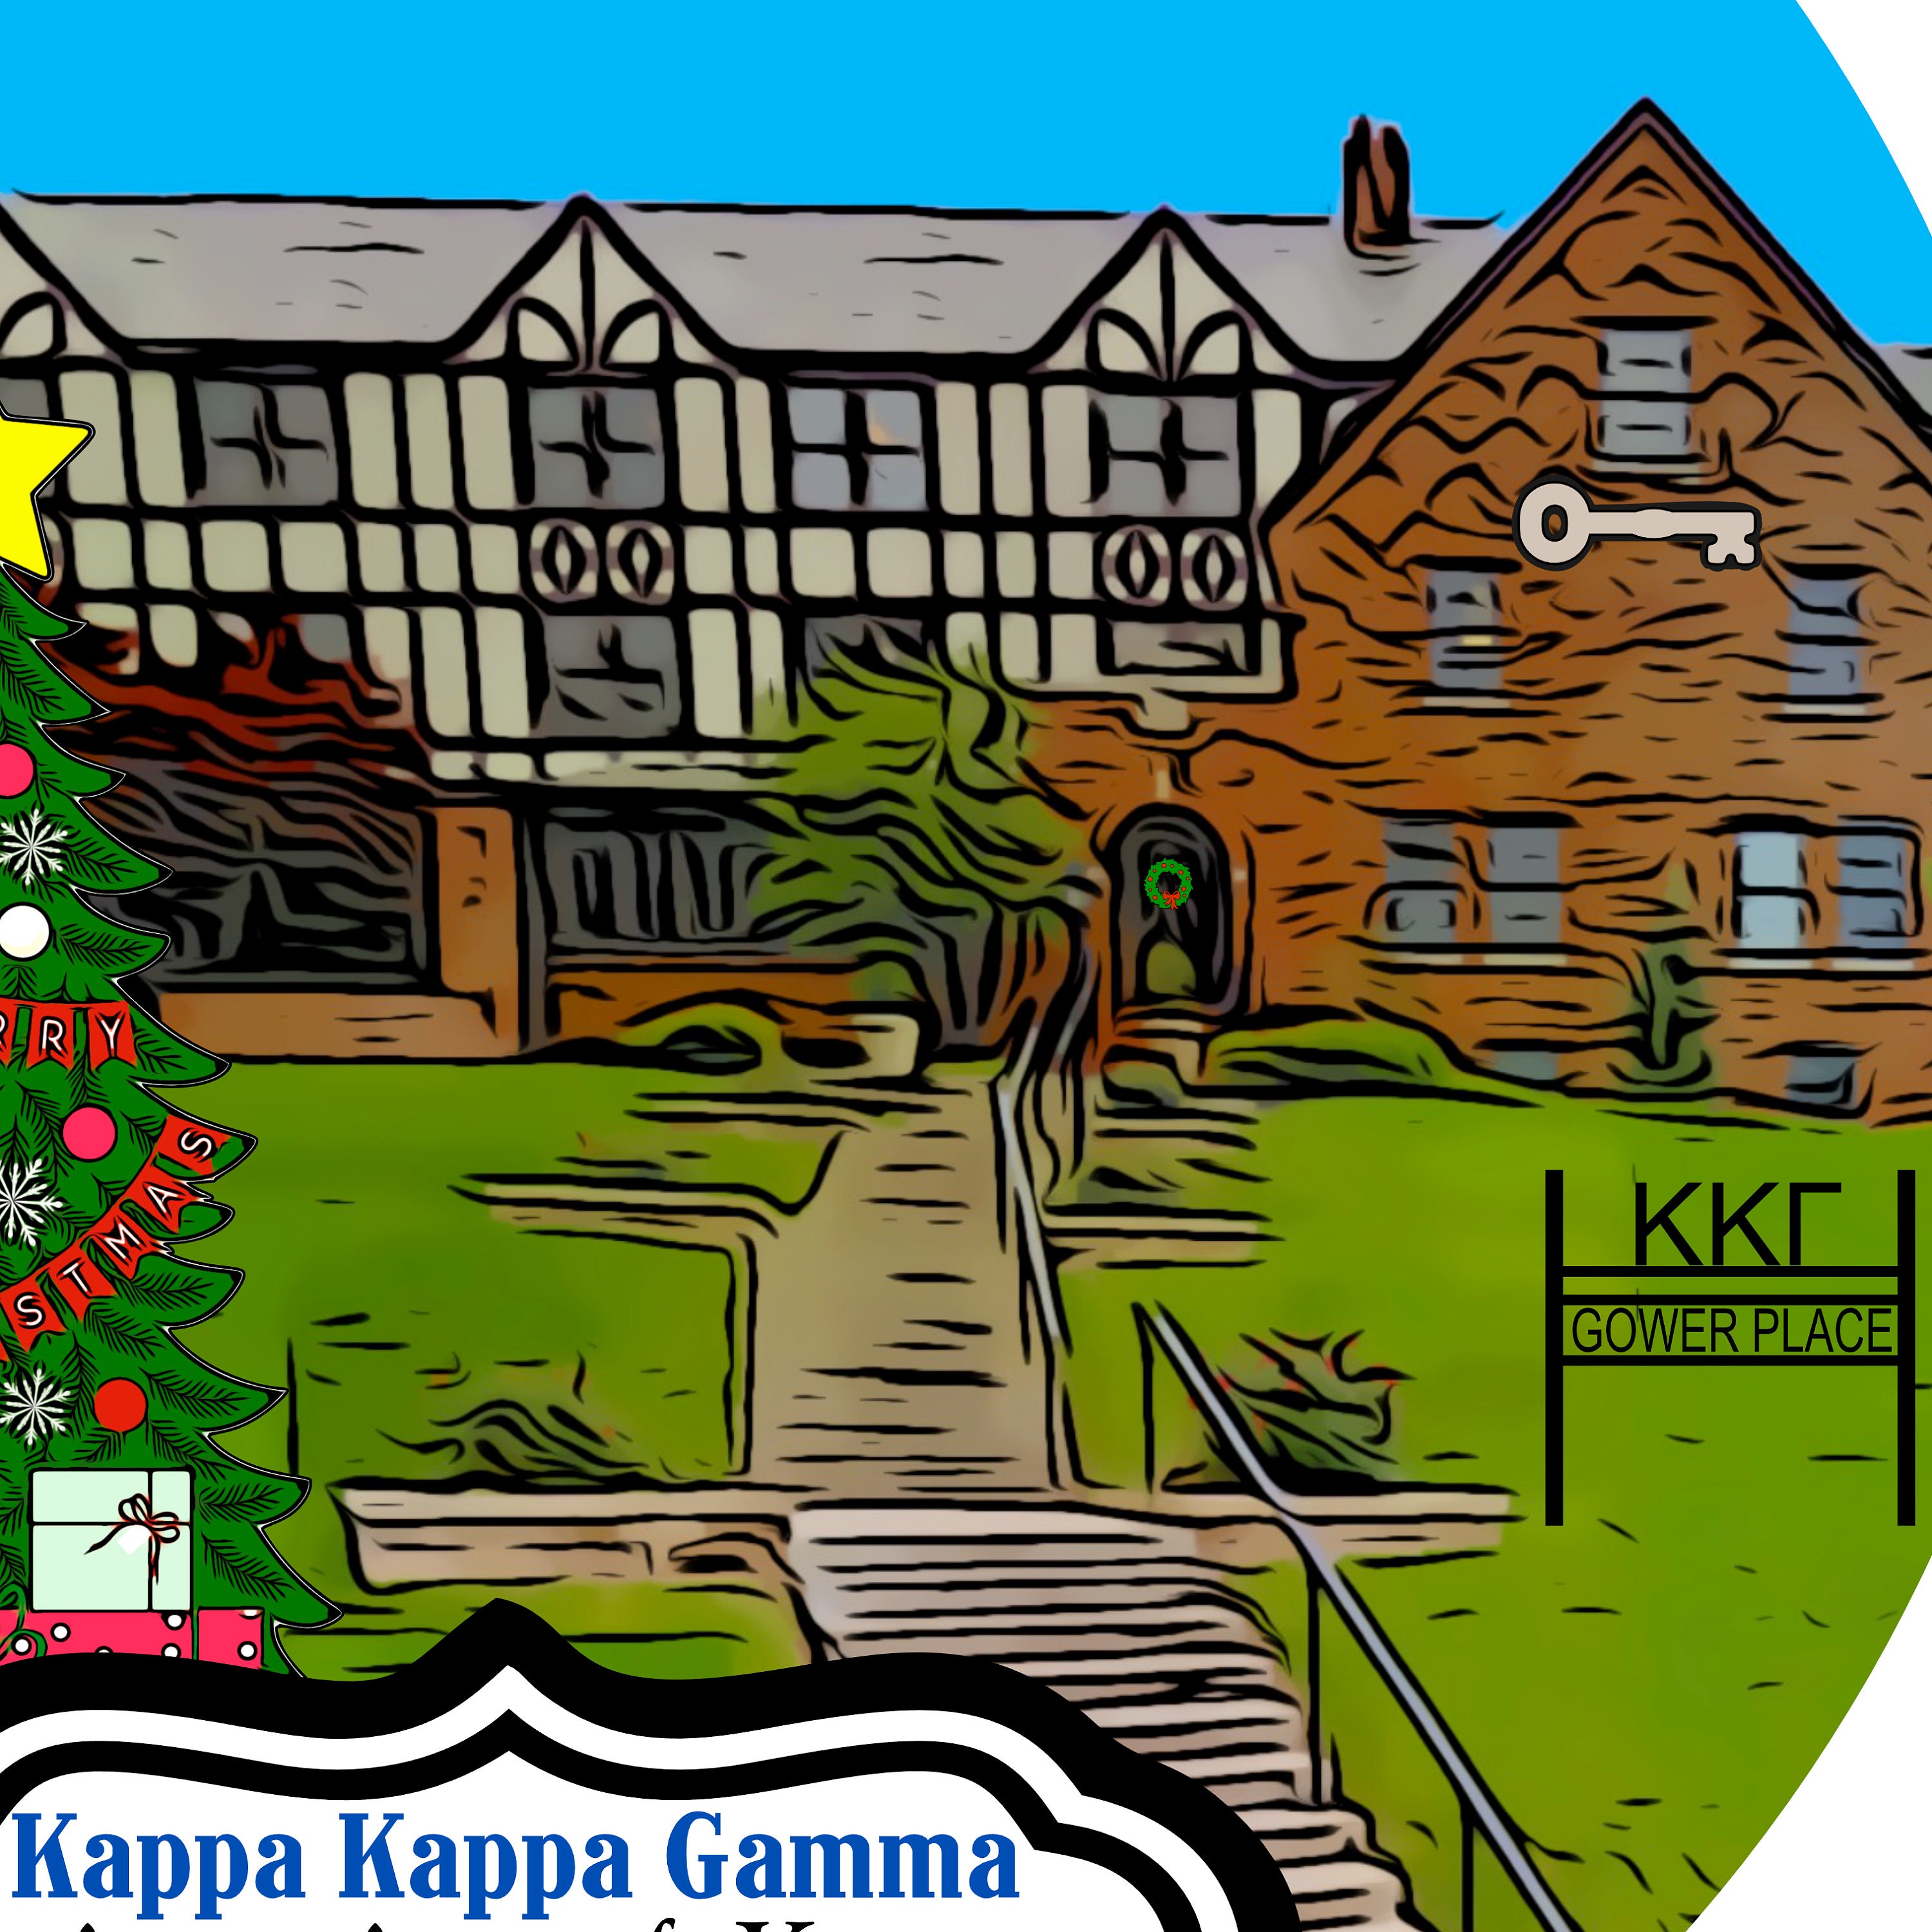 Kappa Kappa Gamma Sorority House at the University of Kansas - Etsy Italia